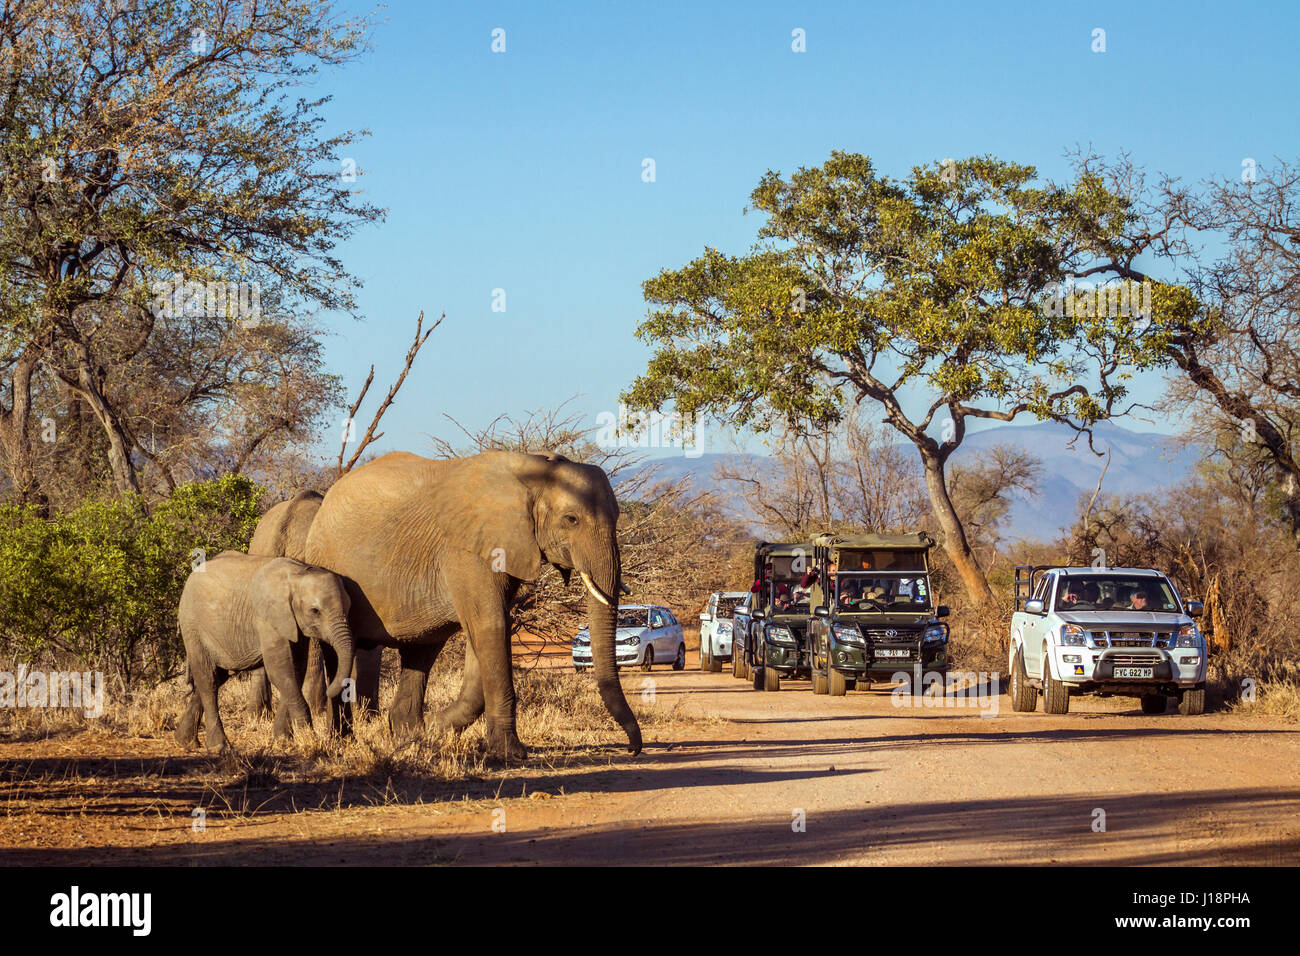 Bush de l'Afrique de l'éléphant au parc national Kruger, Afrique du Sud ; espèce de la famille des Elephantidae Loxodonta africana Banque D'Images